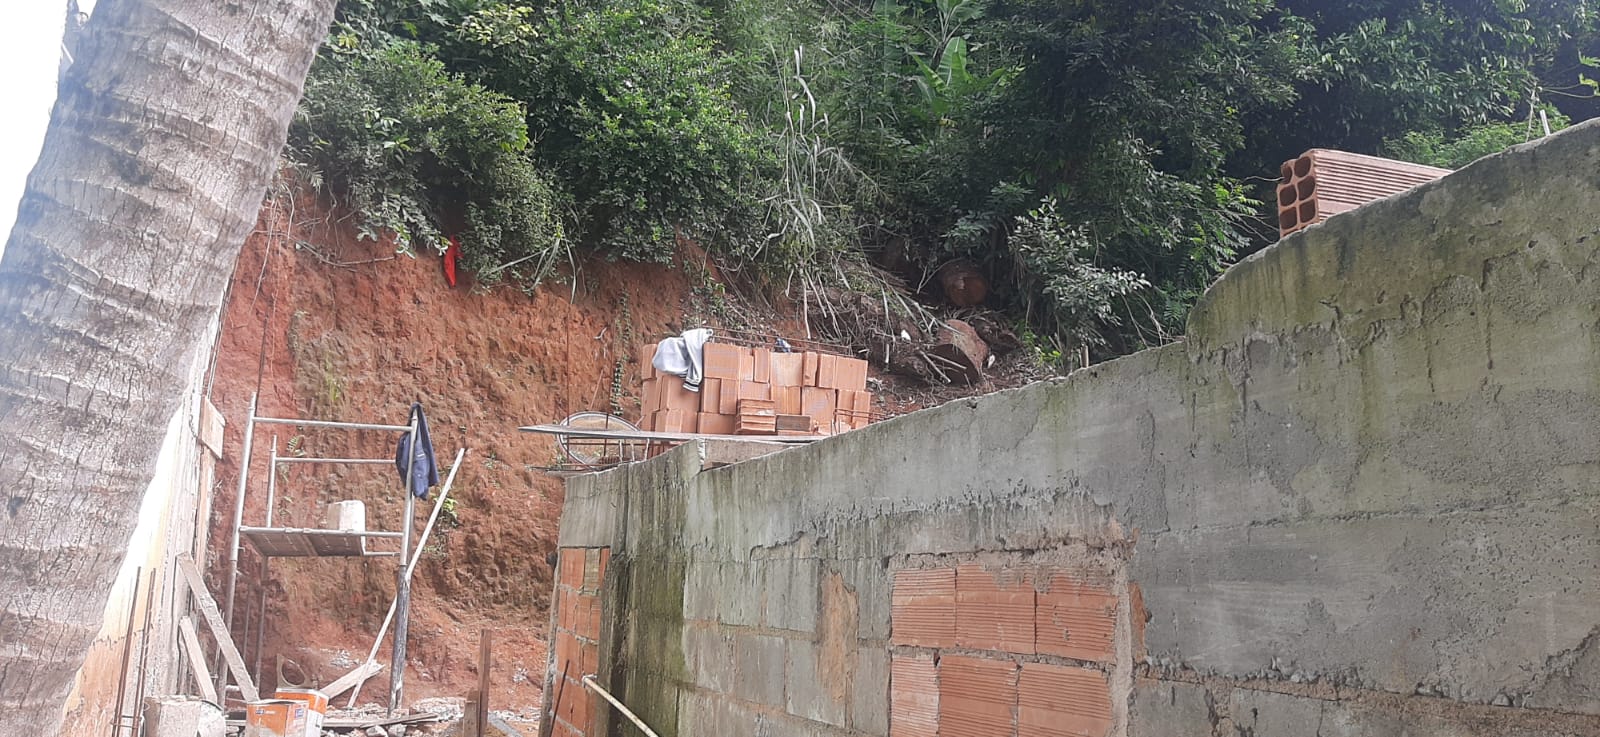 Construções irregulares são identificadas no Morro da Formiga após denúncia feita ao Linha Verde